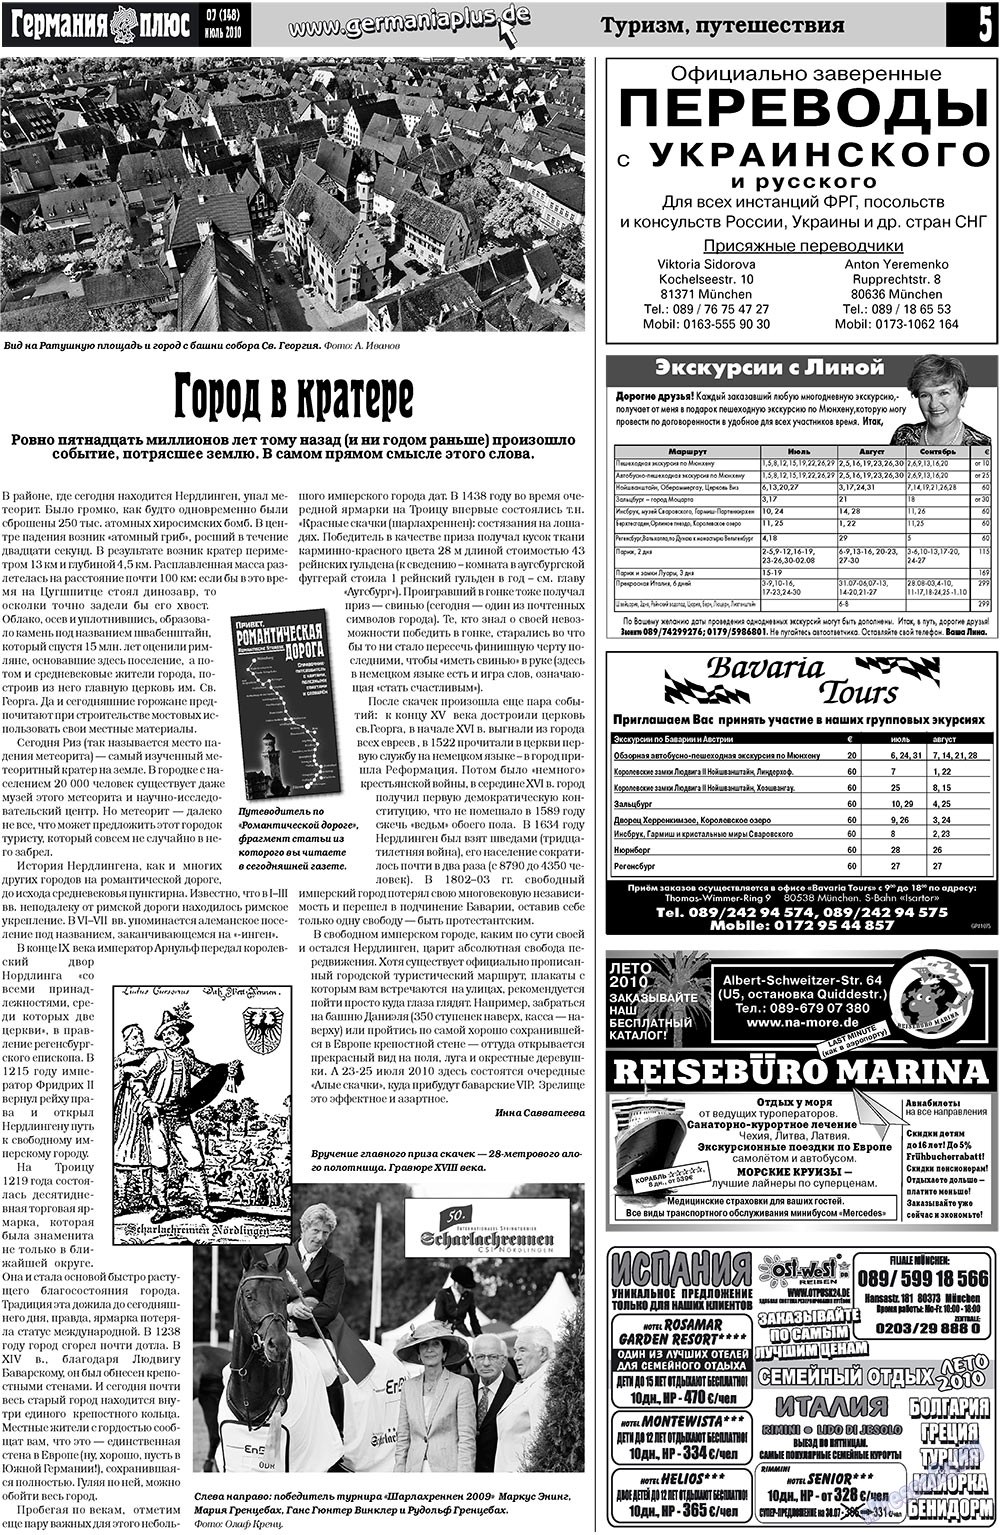 Германия плюс, газета. 2010 №7 стр.5